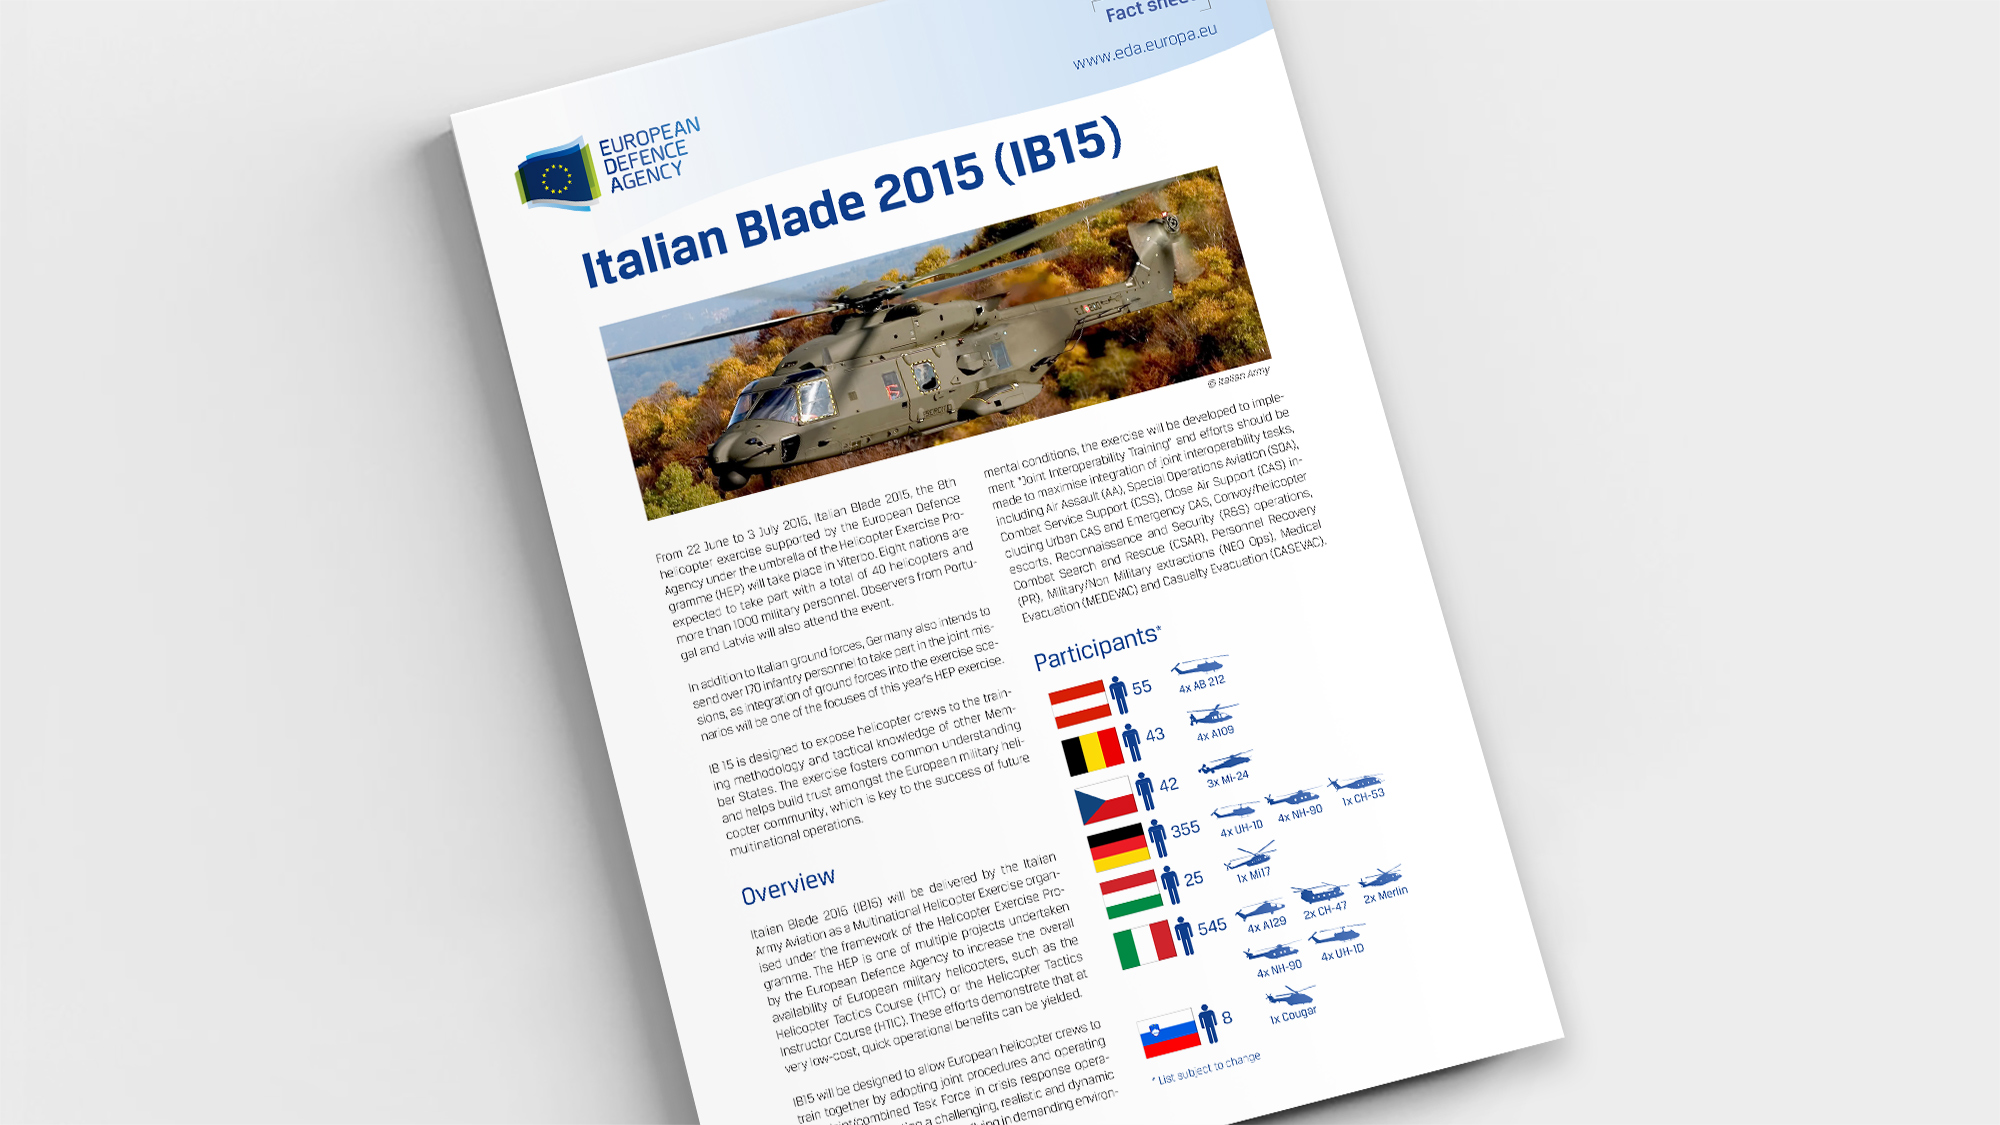 Factsheet Italian Blade 2015 (IB15)